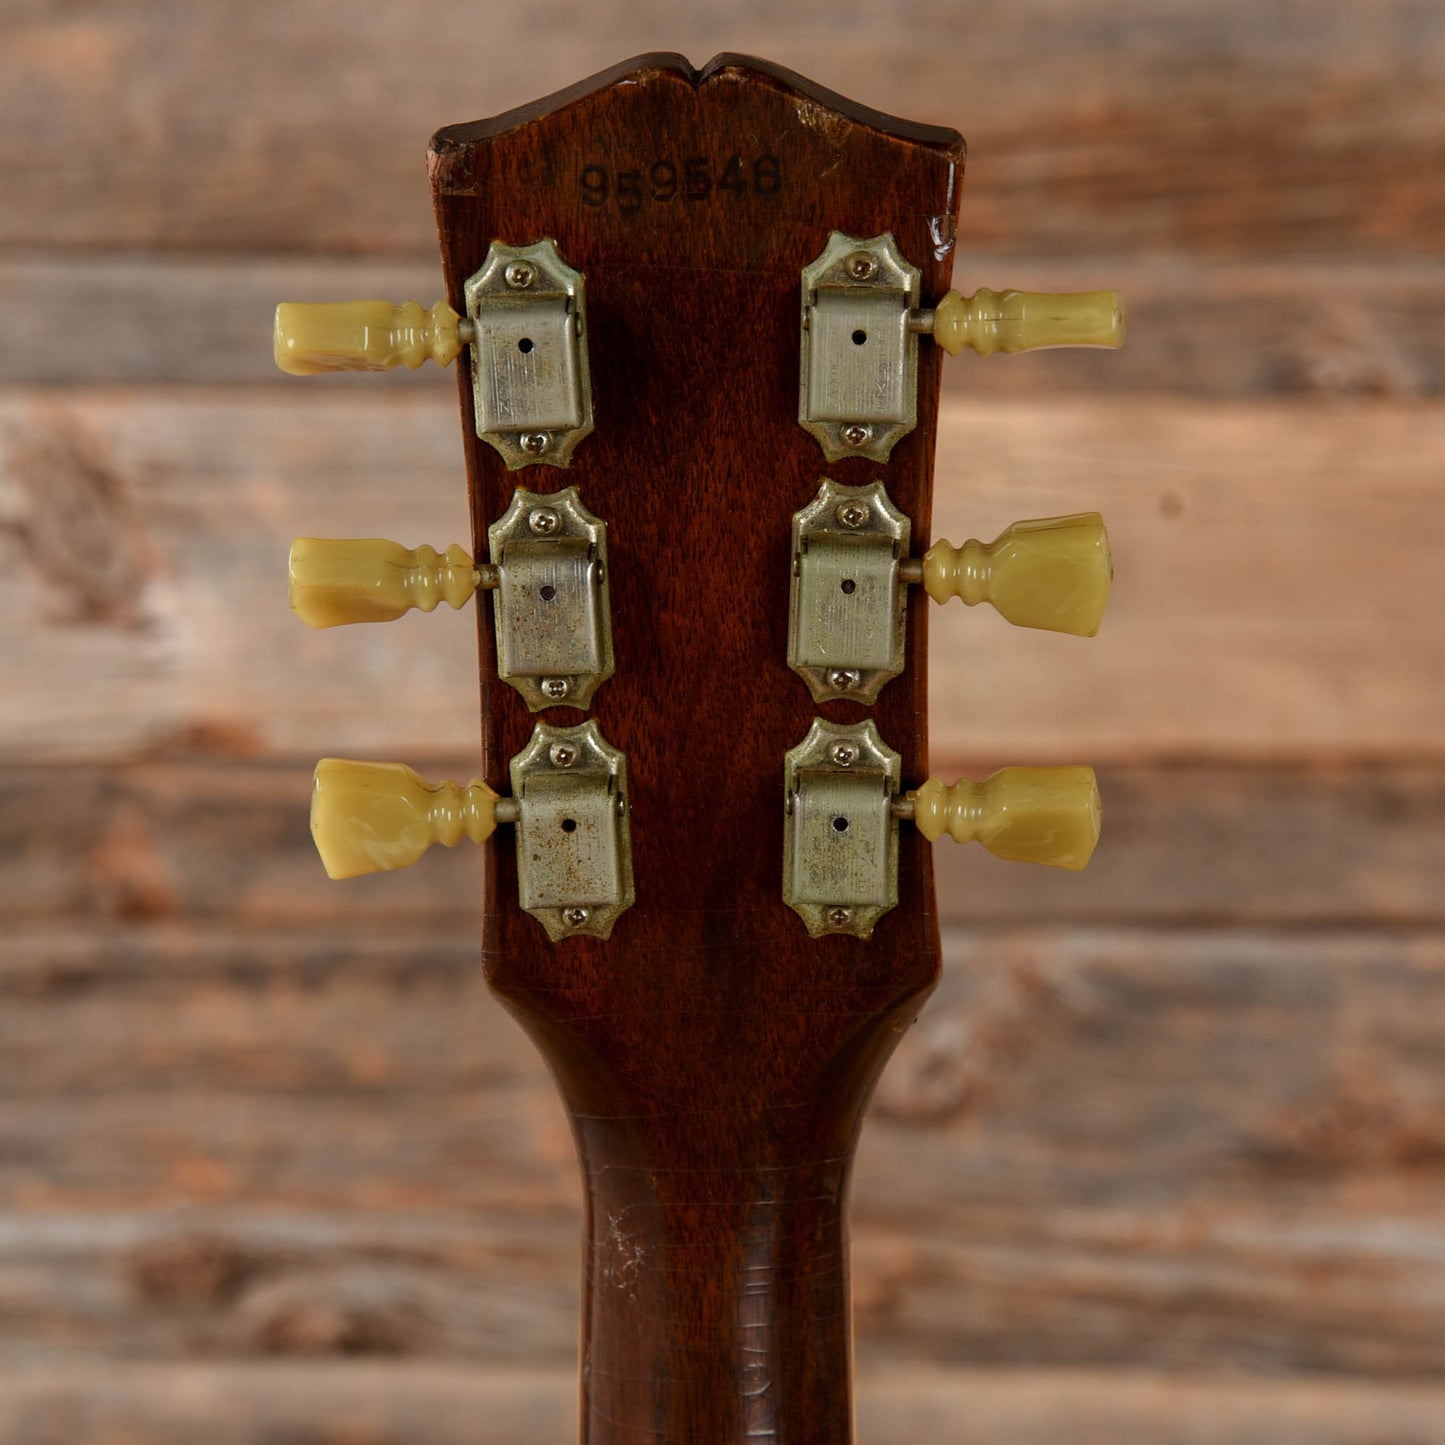 Gibson ES-335 Sunburst 1968